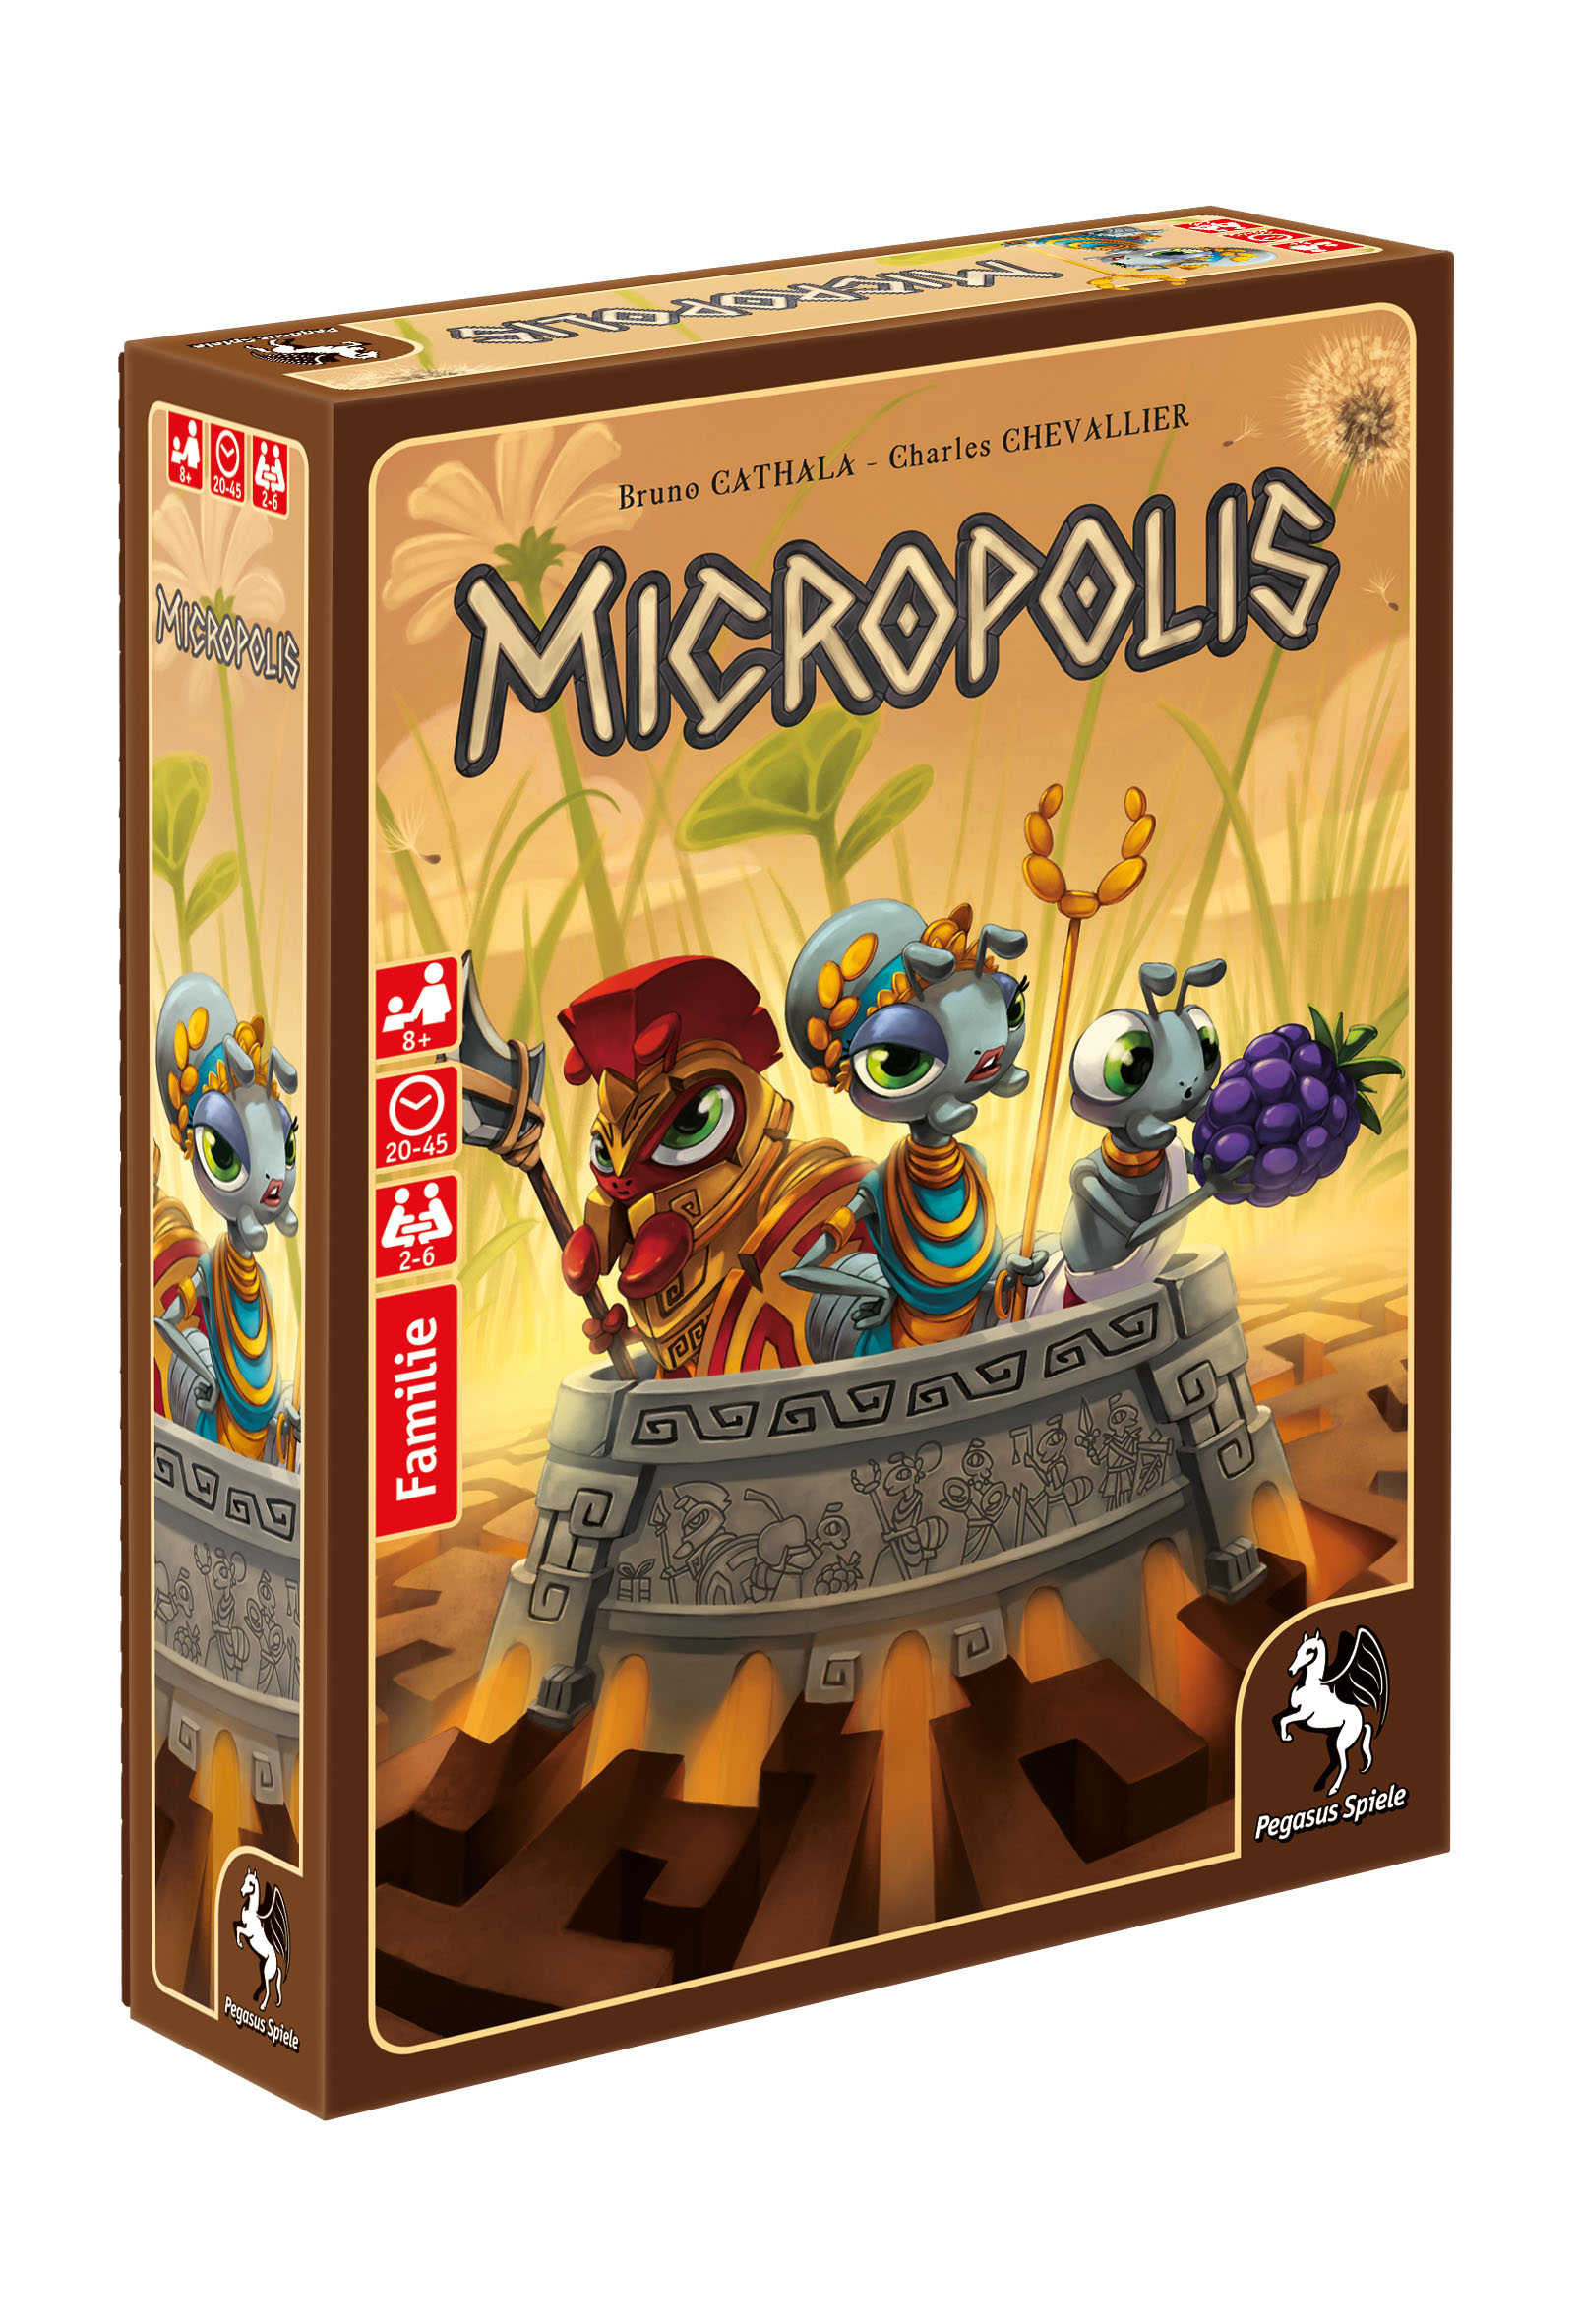 Micropolis erscheint 2018 bei Pegasus Spiele